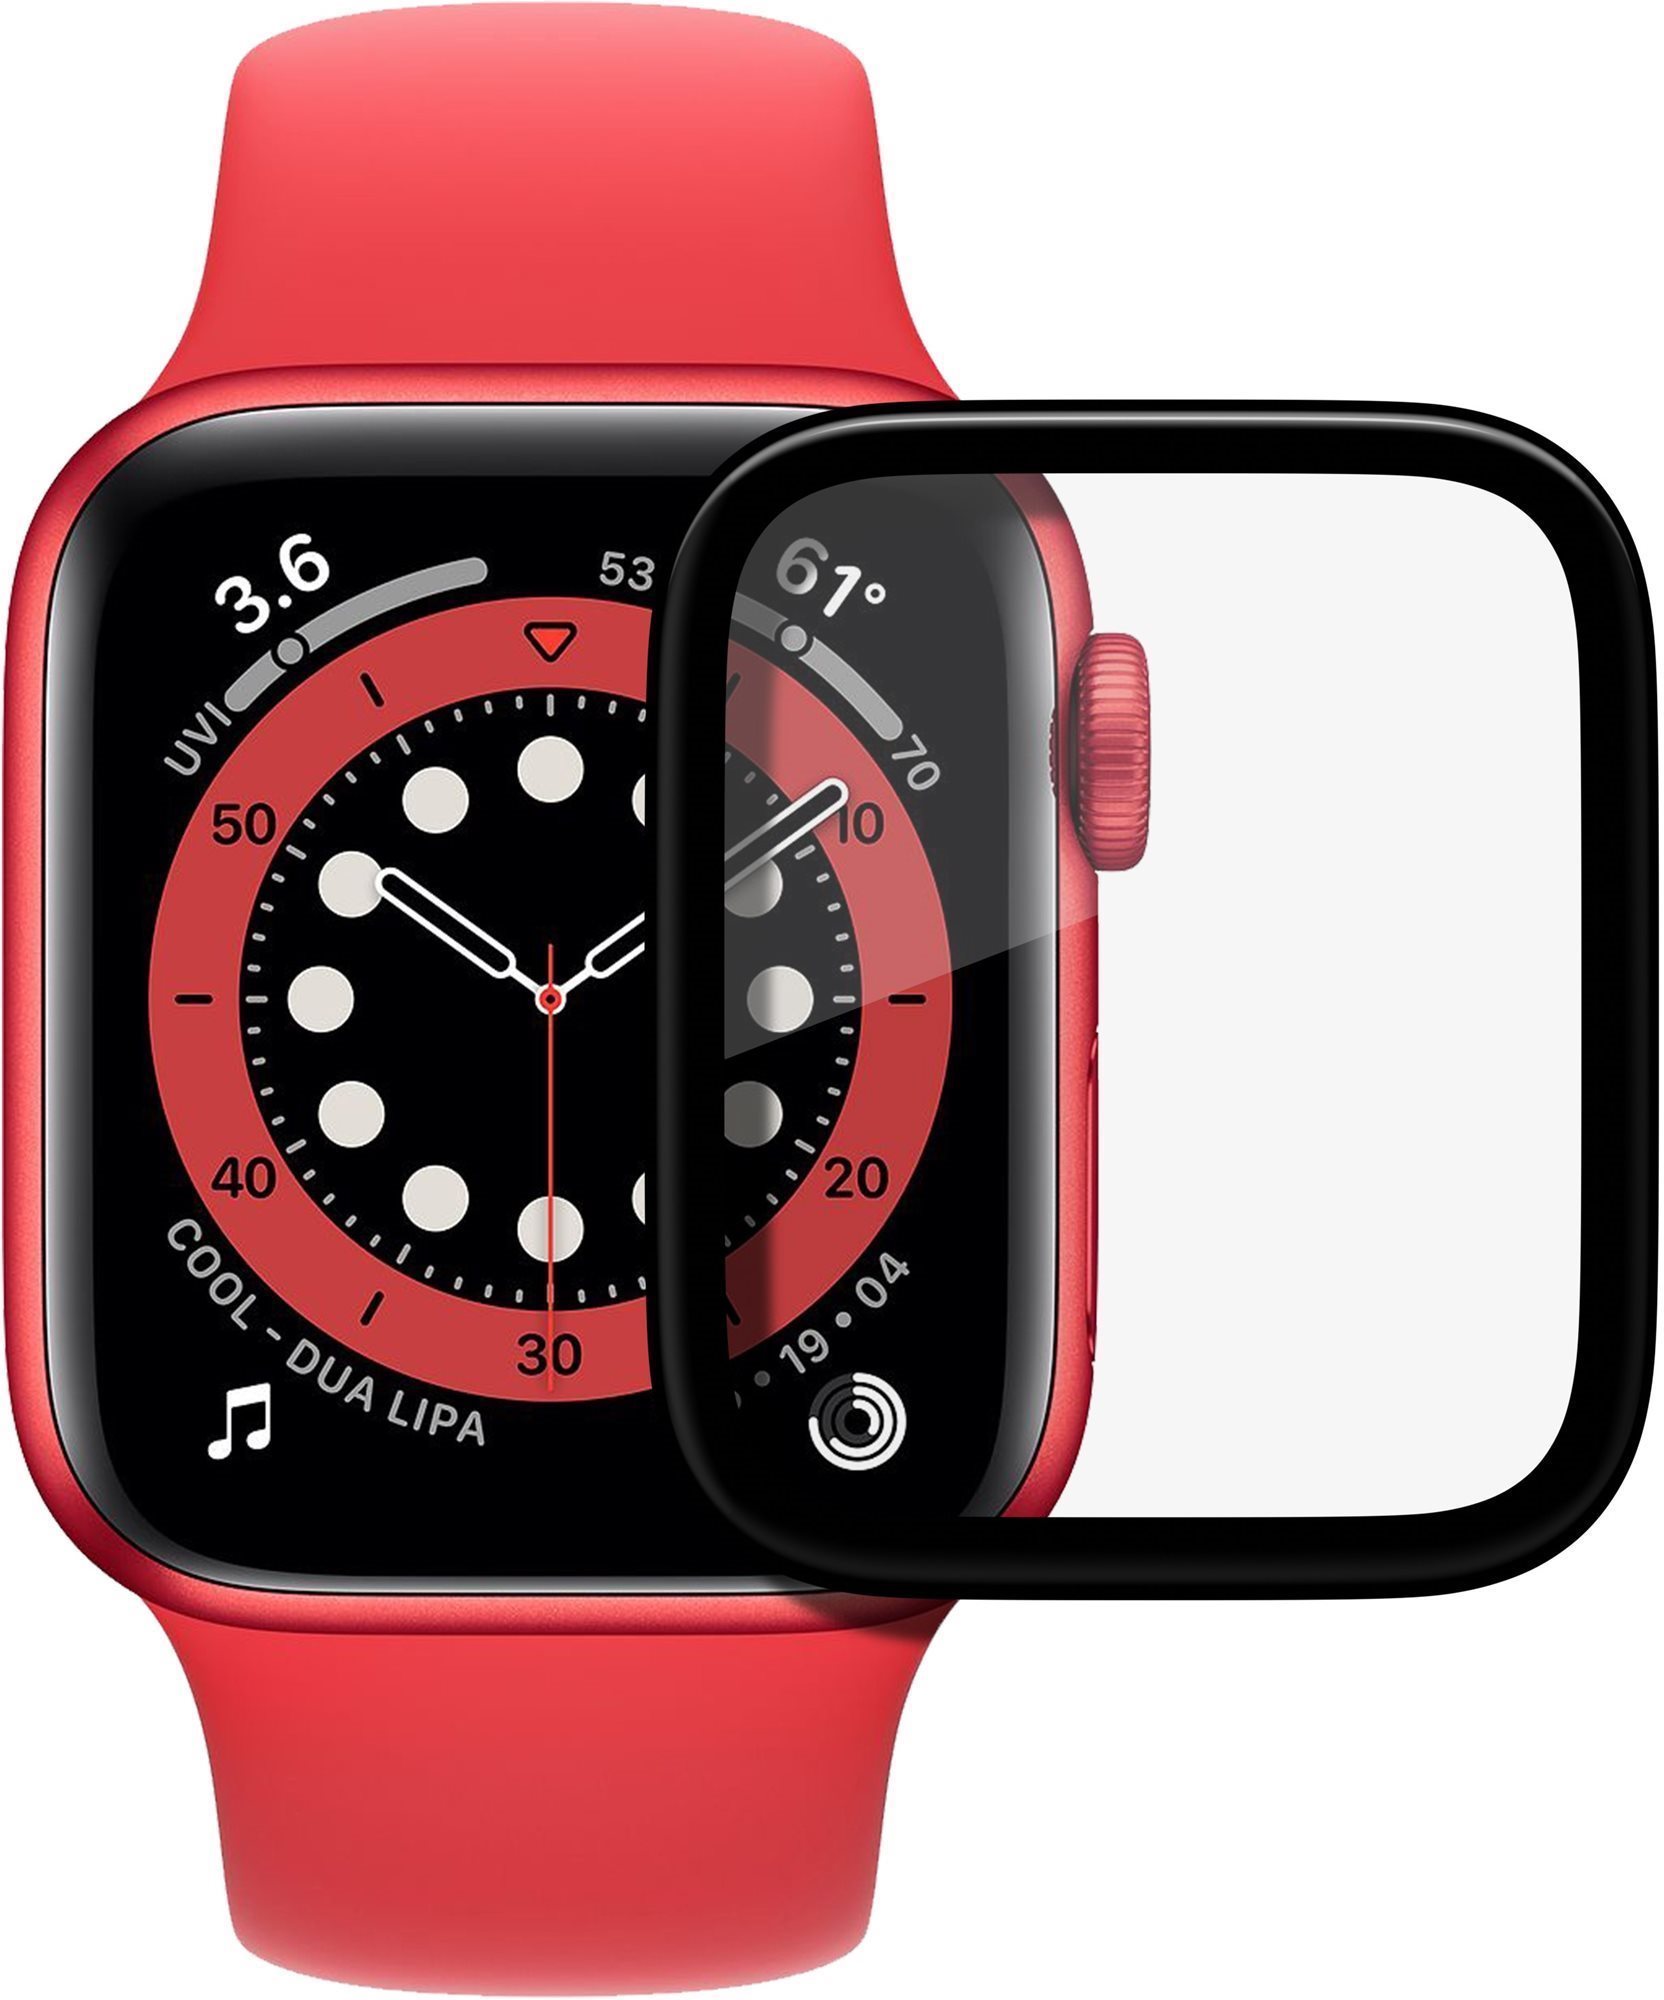 Üvegfólia AlzaGuard FlexGlass Apple Watch 44mm okosórához